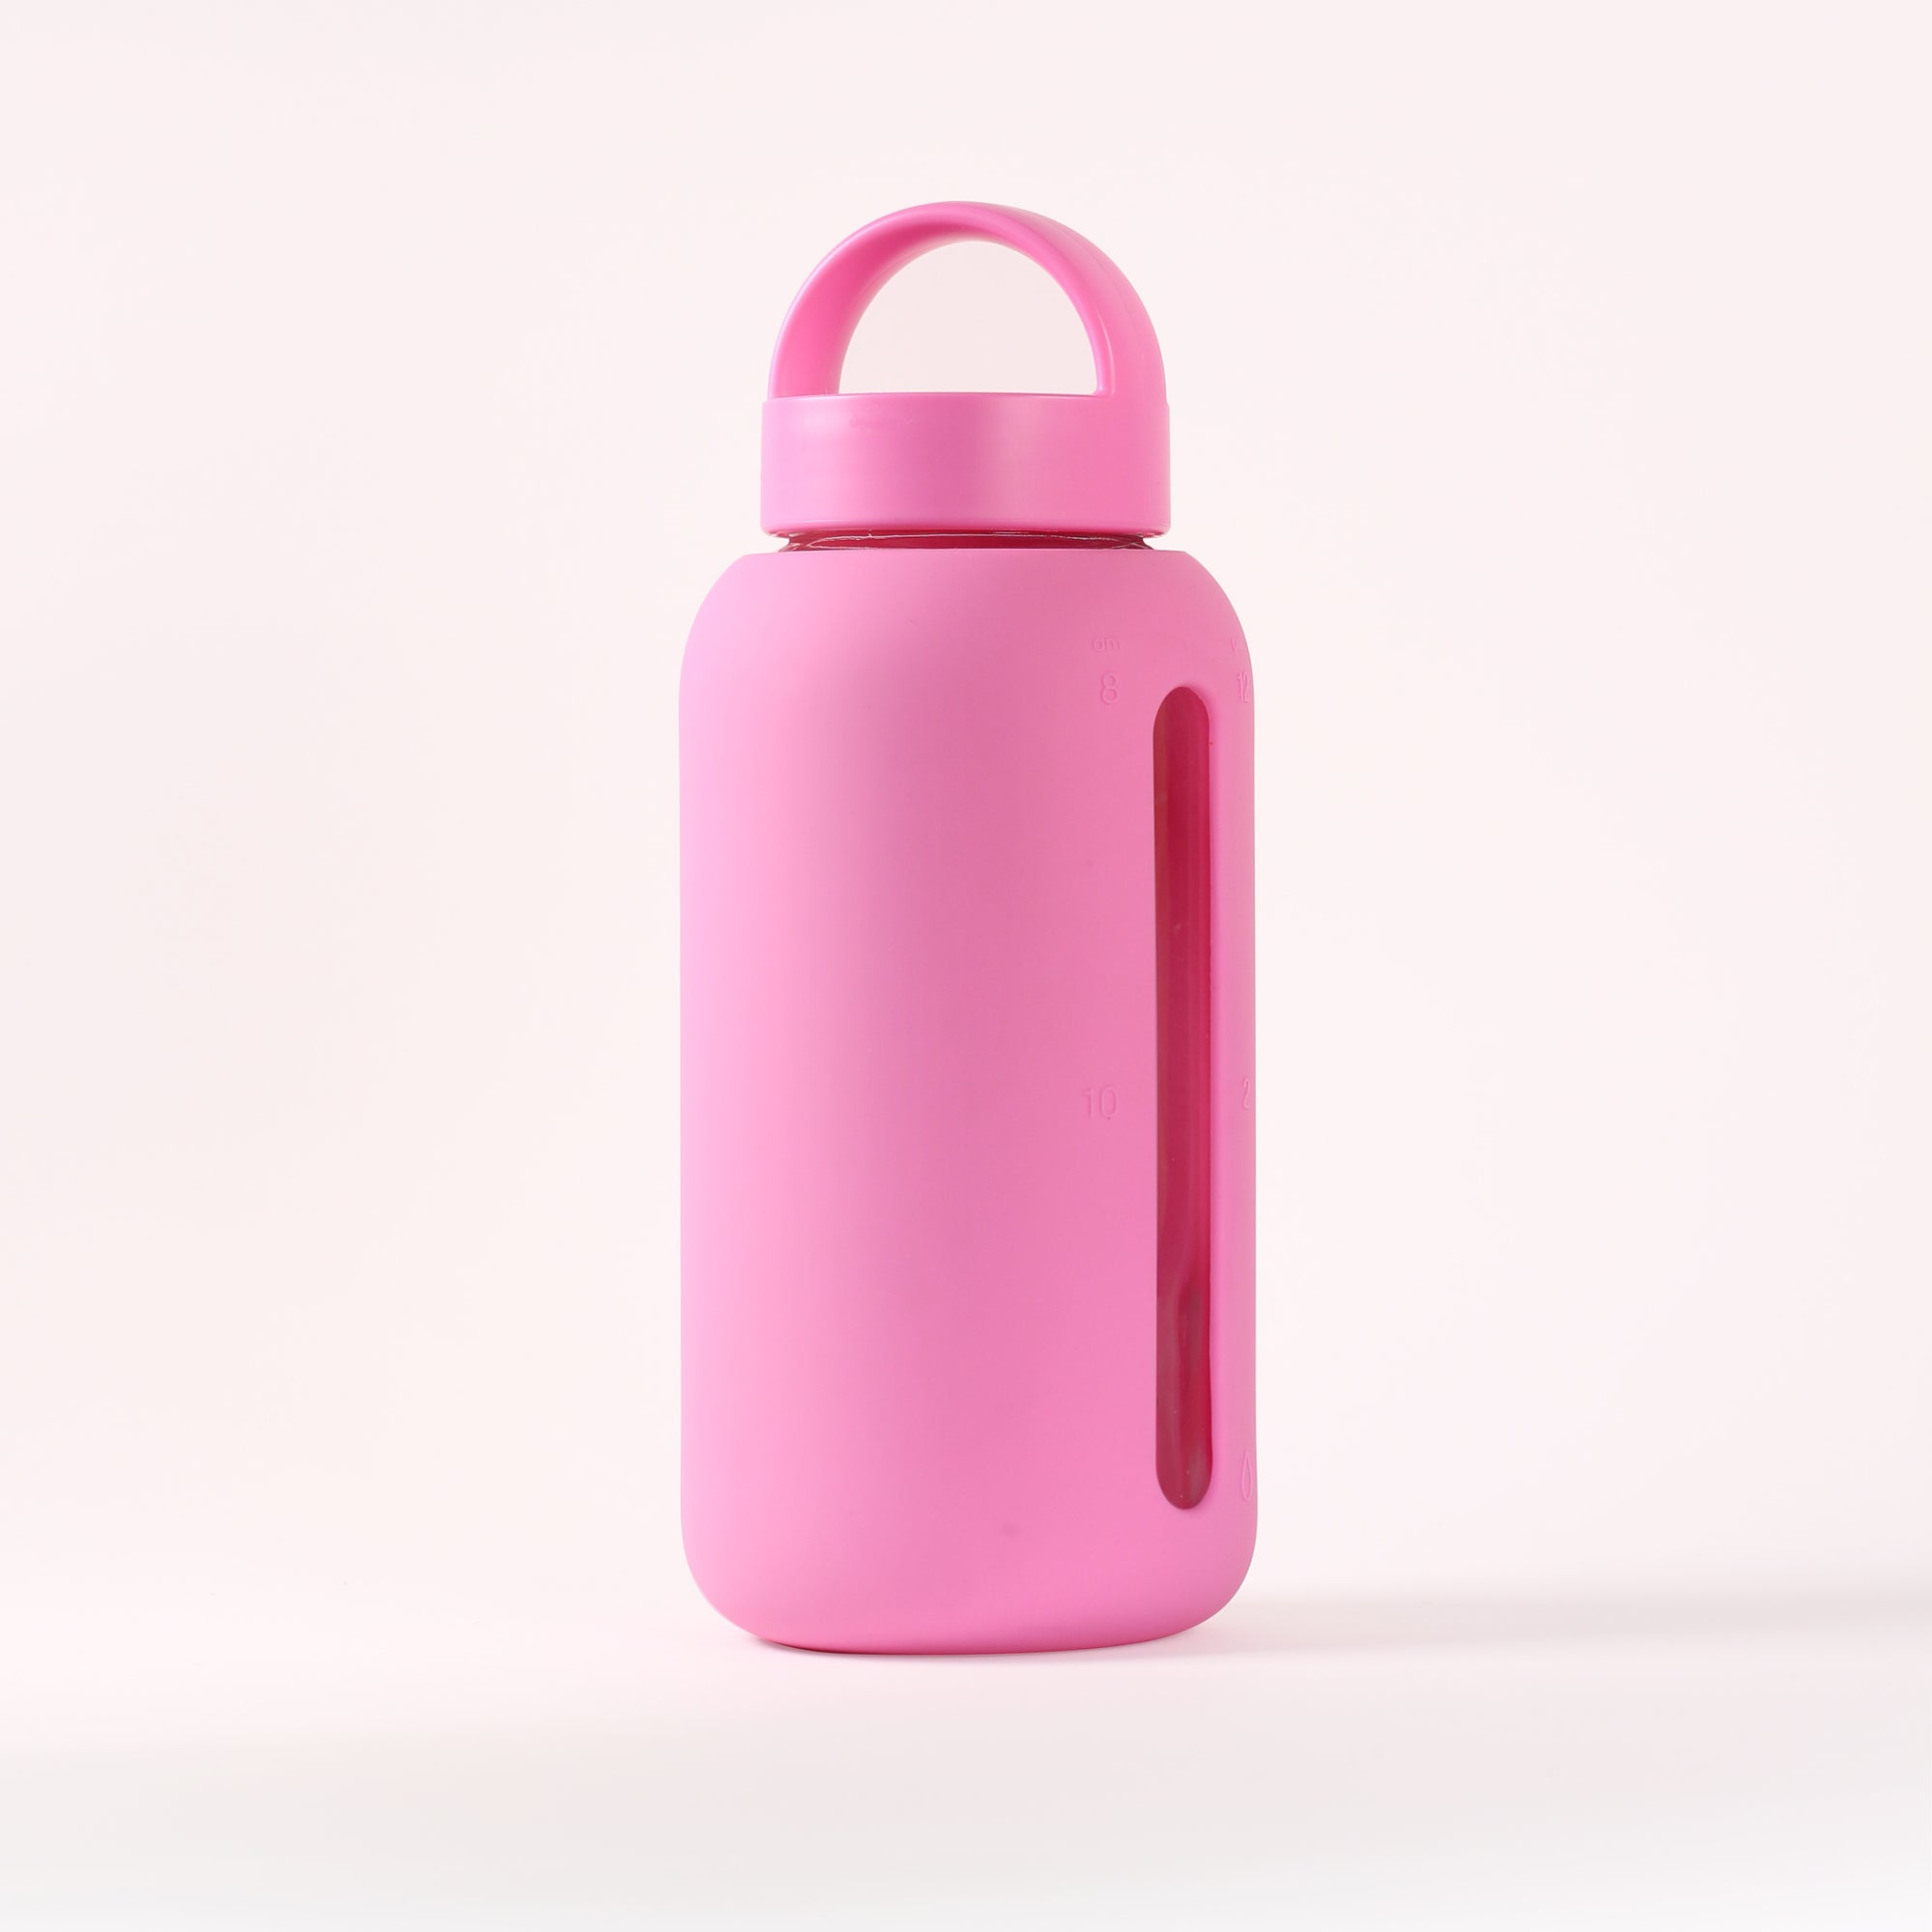 Bubblegum Pink 2 oz Refill Jar